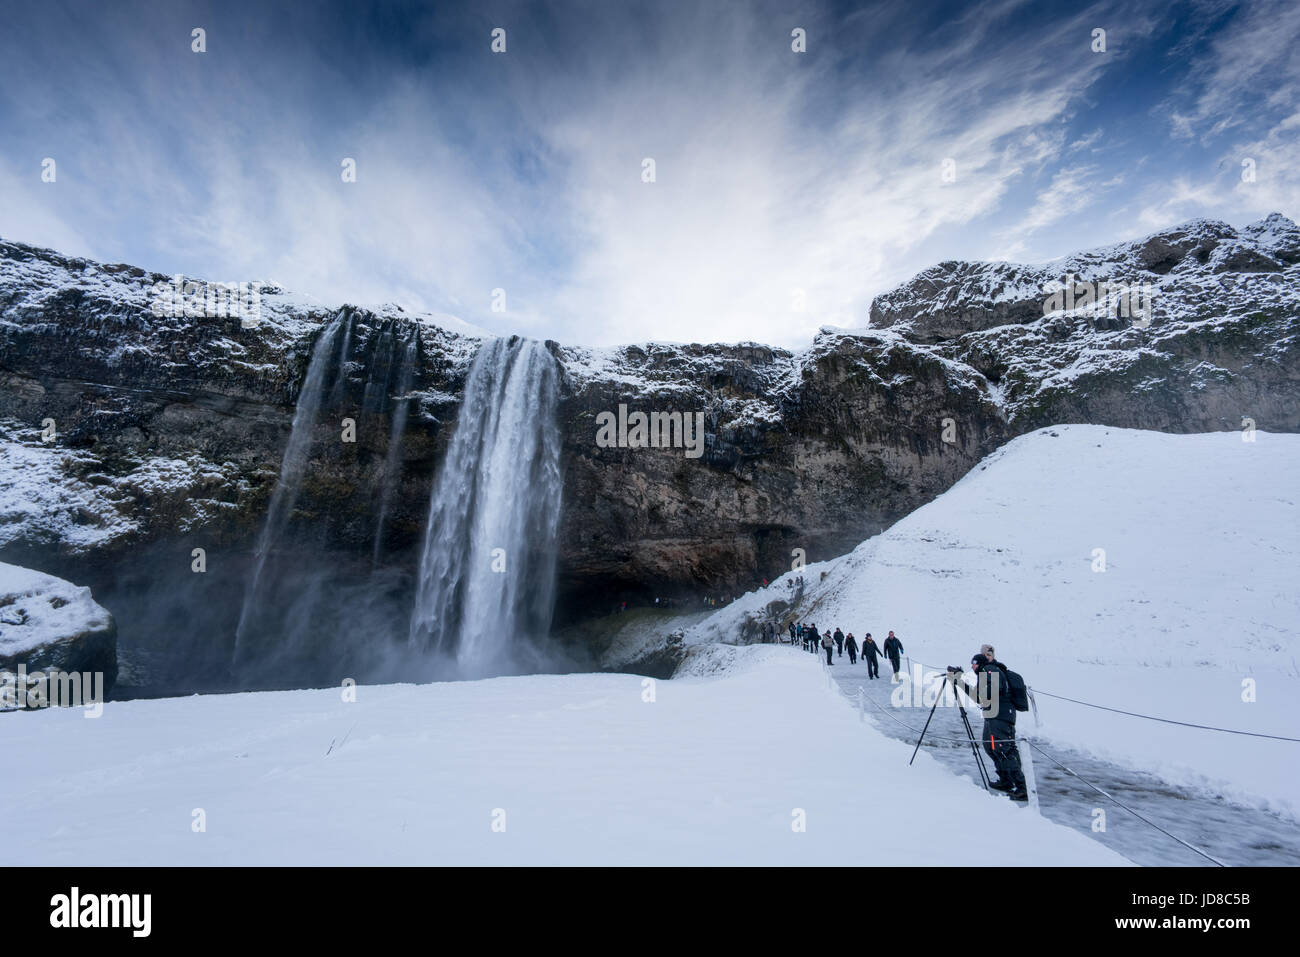 Les touristes l'affichage paysage couvert de neige et de haute chute d'eau, de l'Islande, de l'Europe. Nature de l'Islande 2017 hiver froid Banque D'Images